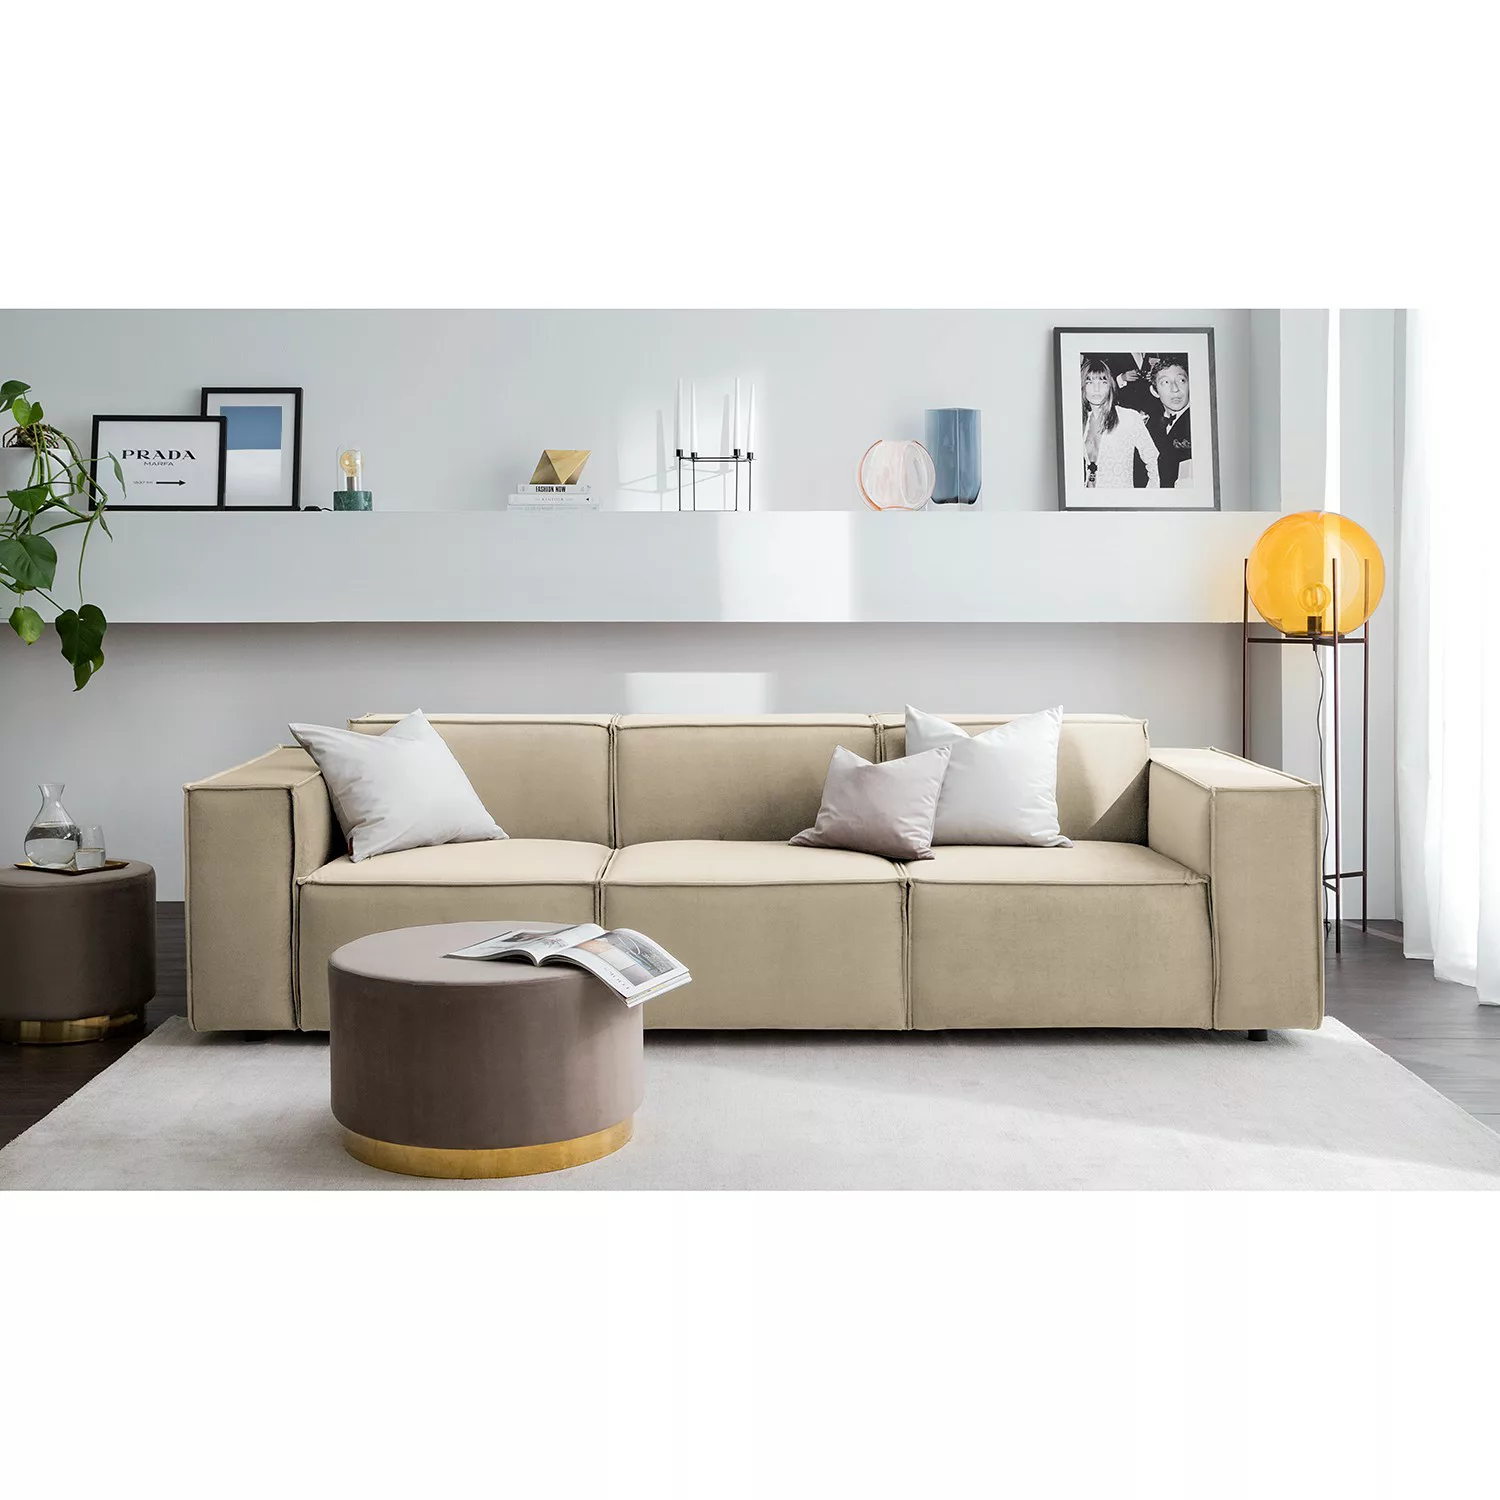 home24 Sofa Kinx II 3-Sitzer Dunkelblau Samt 260x71x96 cm (BxHxT) Glamour günstig online kaufen